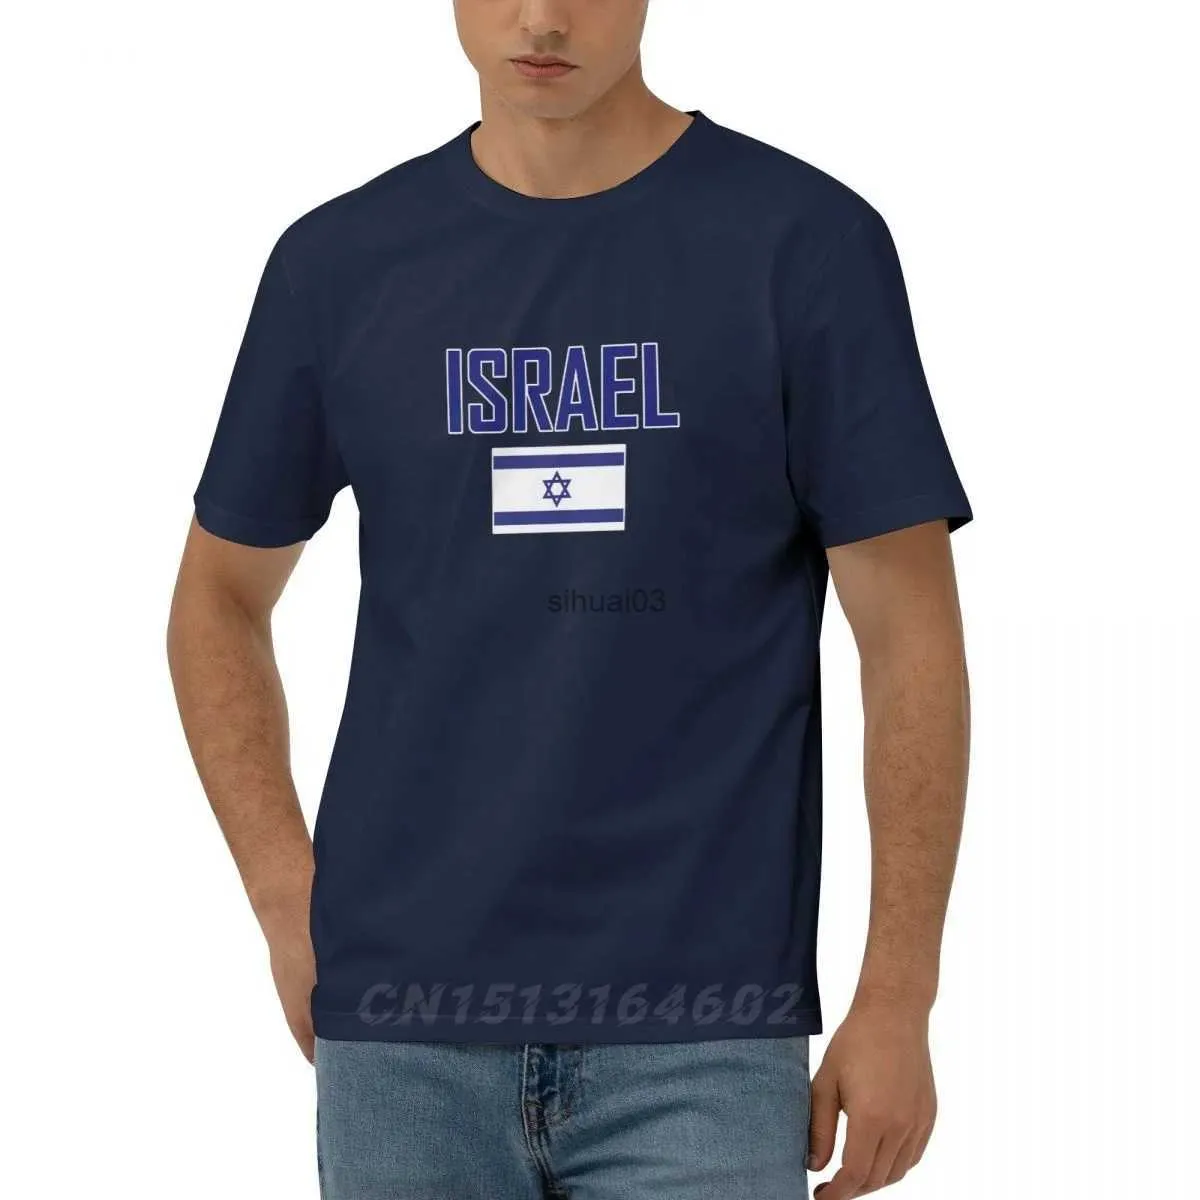 Мужские футболки 100% хлопок Флаг Израиля с буквенным дизайном Футболки с короткими рукавами Мужчины Женщины Одежда унисекс Футболки Топы Футболки 5XL